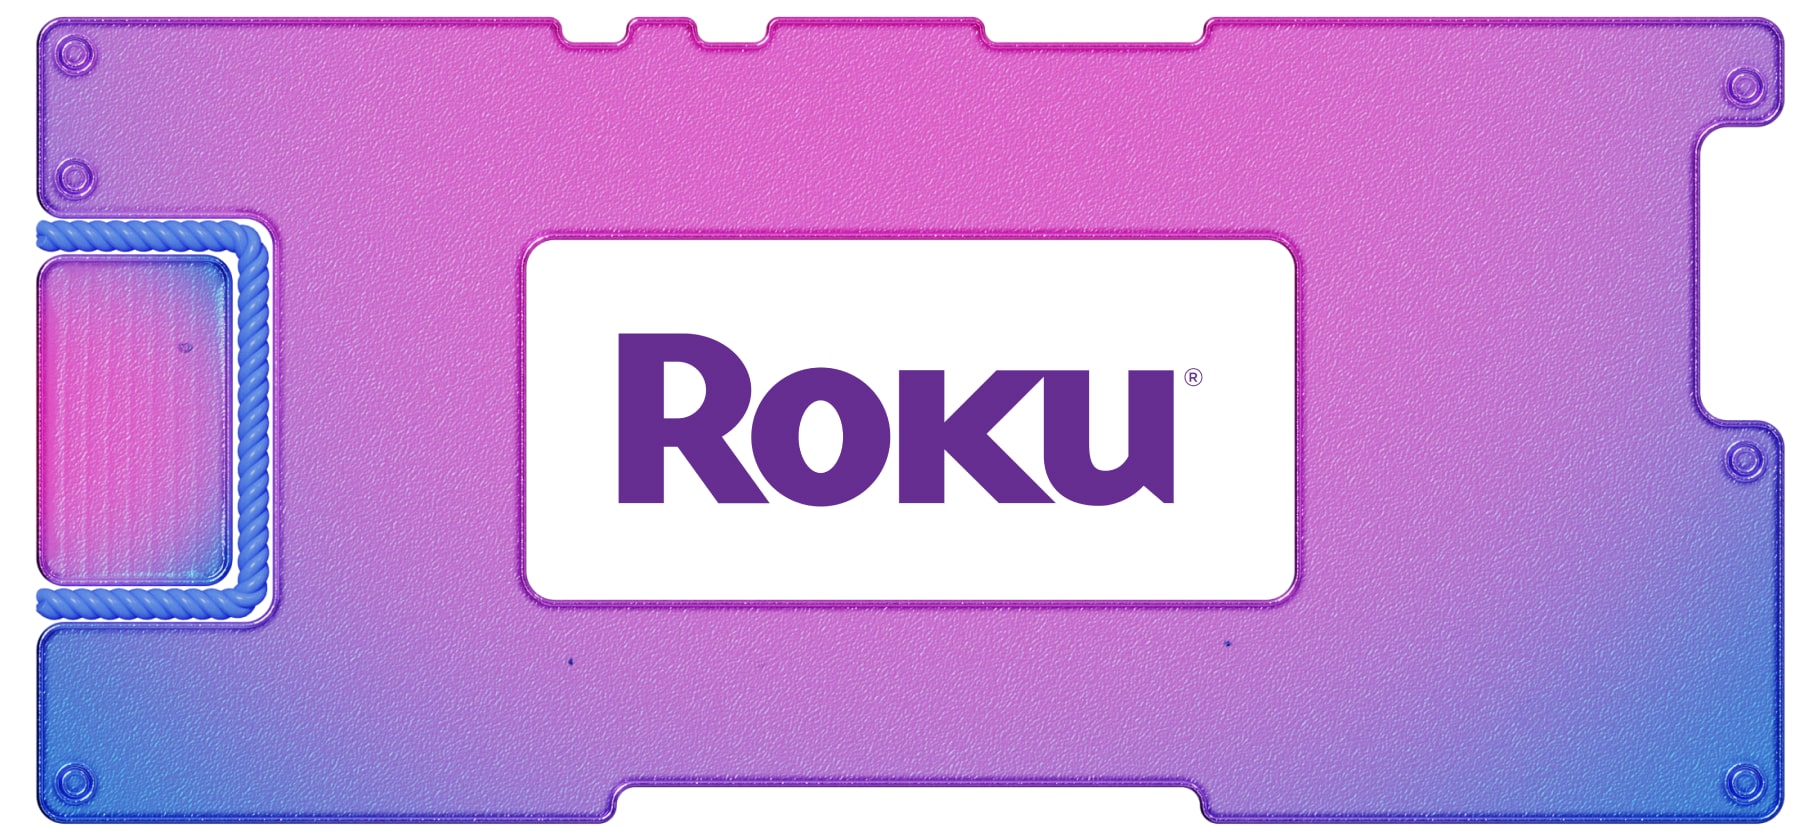 Roku: выручка растет, прибыль появляется, чтобы исчезнуть